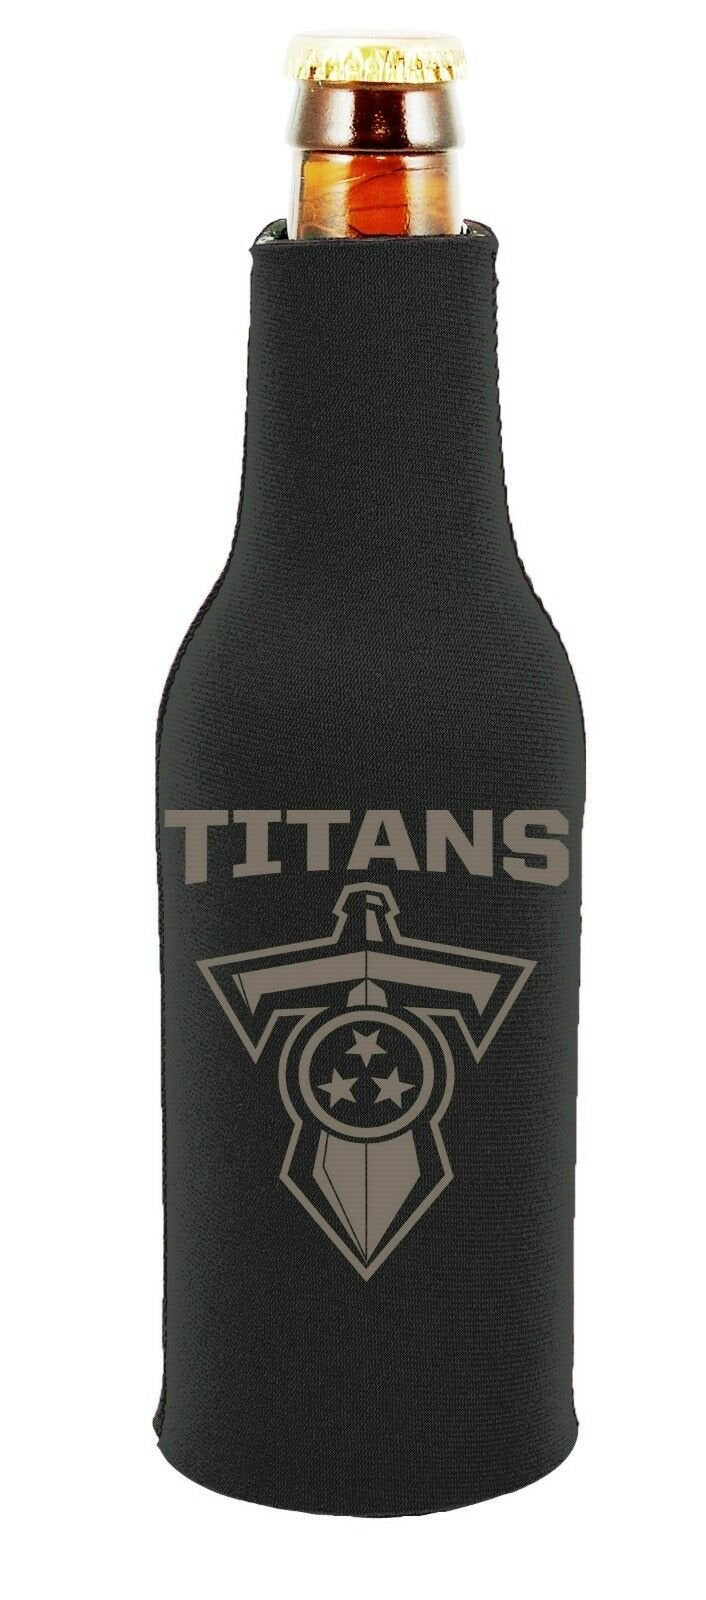 Tennessee Titans 2-PACK Zipper BOTTLE Tonal Black Koozie Neoprene Holder Cooler